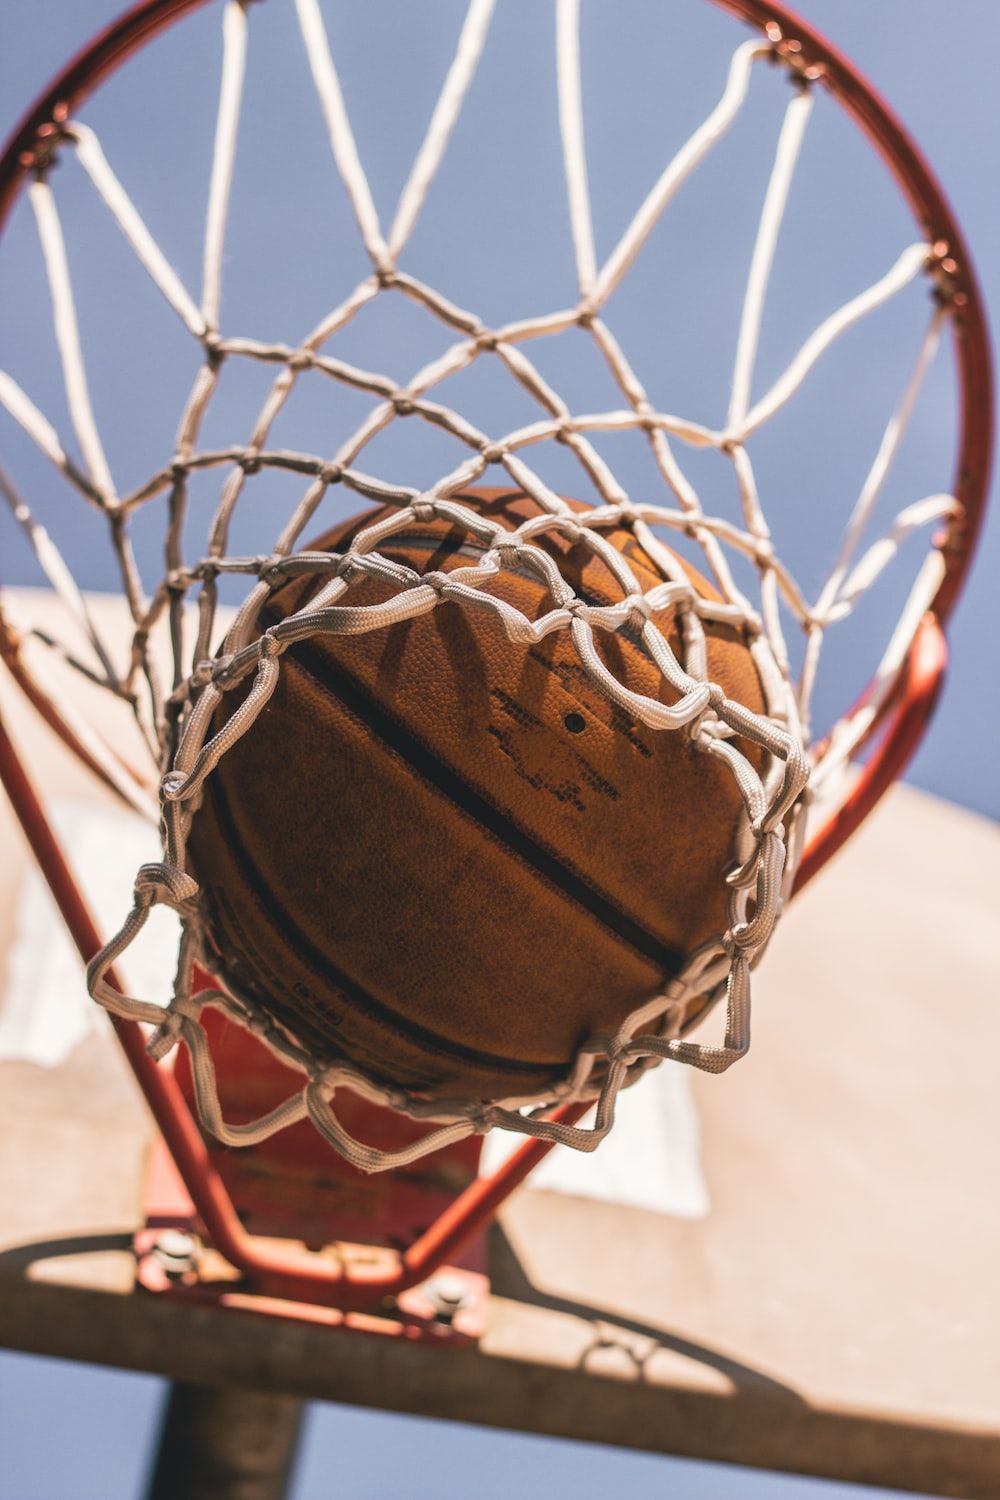 A basketball in a net - Basketball